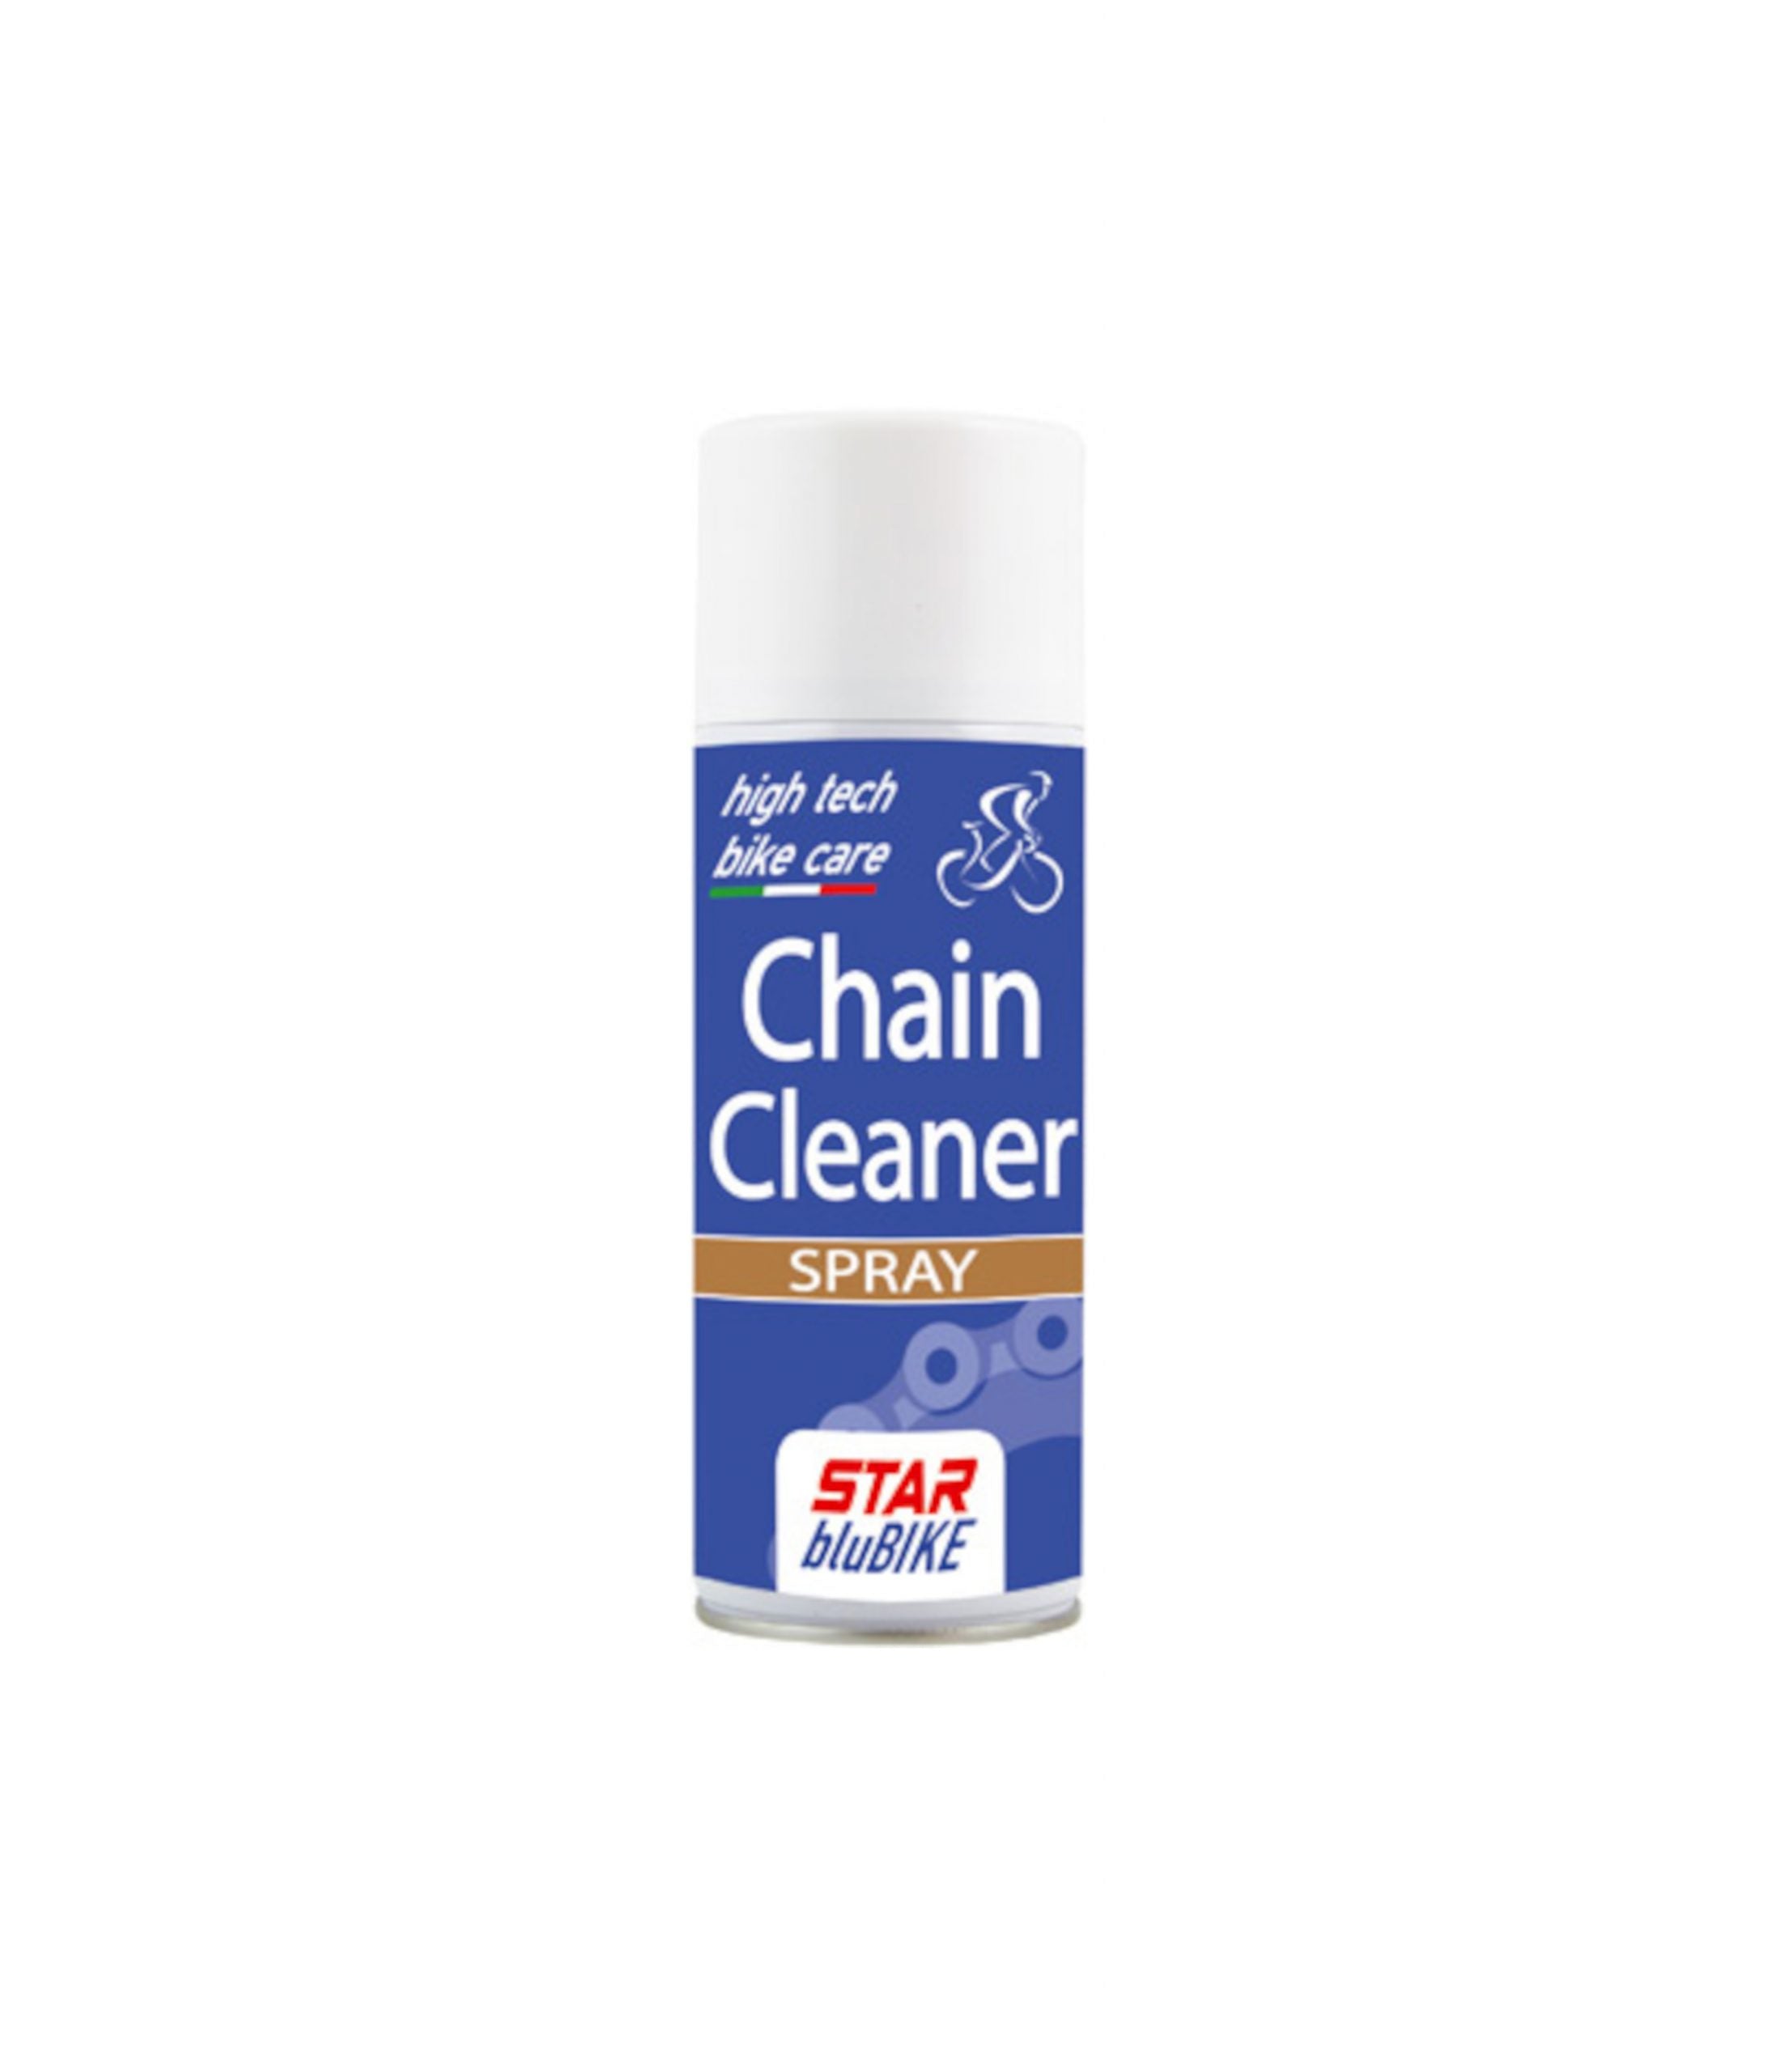 Chain cleaner spray Star bluBike, 400ml